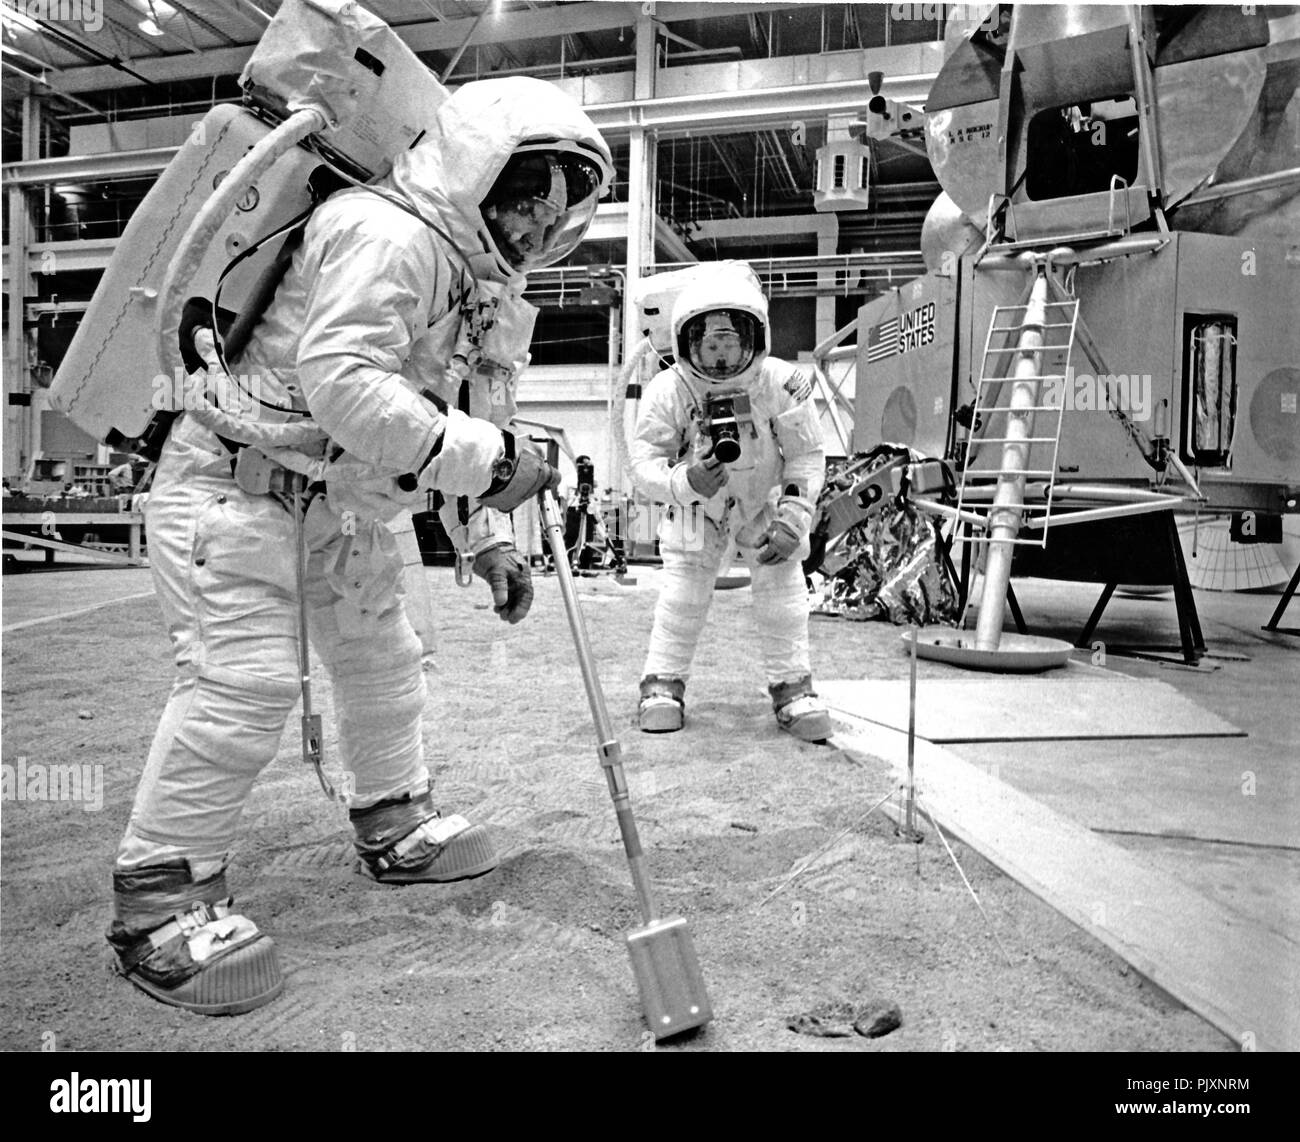 Houston, TX - (Datei) - Apollo 11 Lunar Module (LM) Pilot Edwin E." "Buzz" Aldrin, Vorderseite und Raumschiff Kommandant Neil Armstrong, hinten, Praxis Mondoberfläche Aktivitäten auf die bemannte Raumfahrzeuge Center, Houston, Texas am Freitag, 18. April 1969. Aldrin ist mit einer Schaufel, um Proben von der Oberfläche sammeln während Armstrong Bilder nimmt. Die Landefähre (LM) ist im Hintergrund. Die Astronauten sind im Weltraum entspricht. Atmen Sauerstoff, Druck und Temperatur werden durch Rucksäcke zur Verfügung gestellt. Apollo 11 wurde am 16. Juli 1969 und sicher zur Erde zurückgekehrt ist am 24. Juli 1969. Credit: NASA v Stockfoto